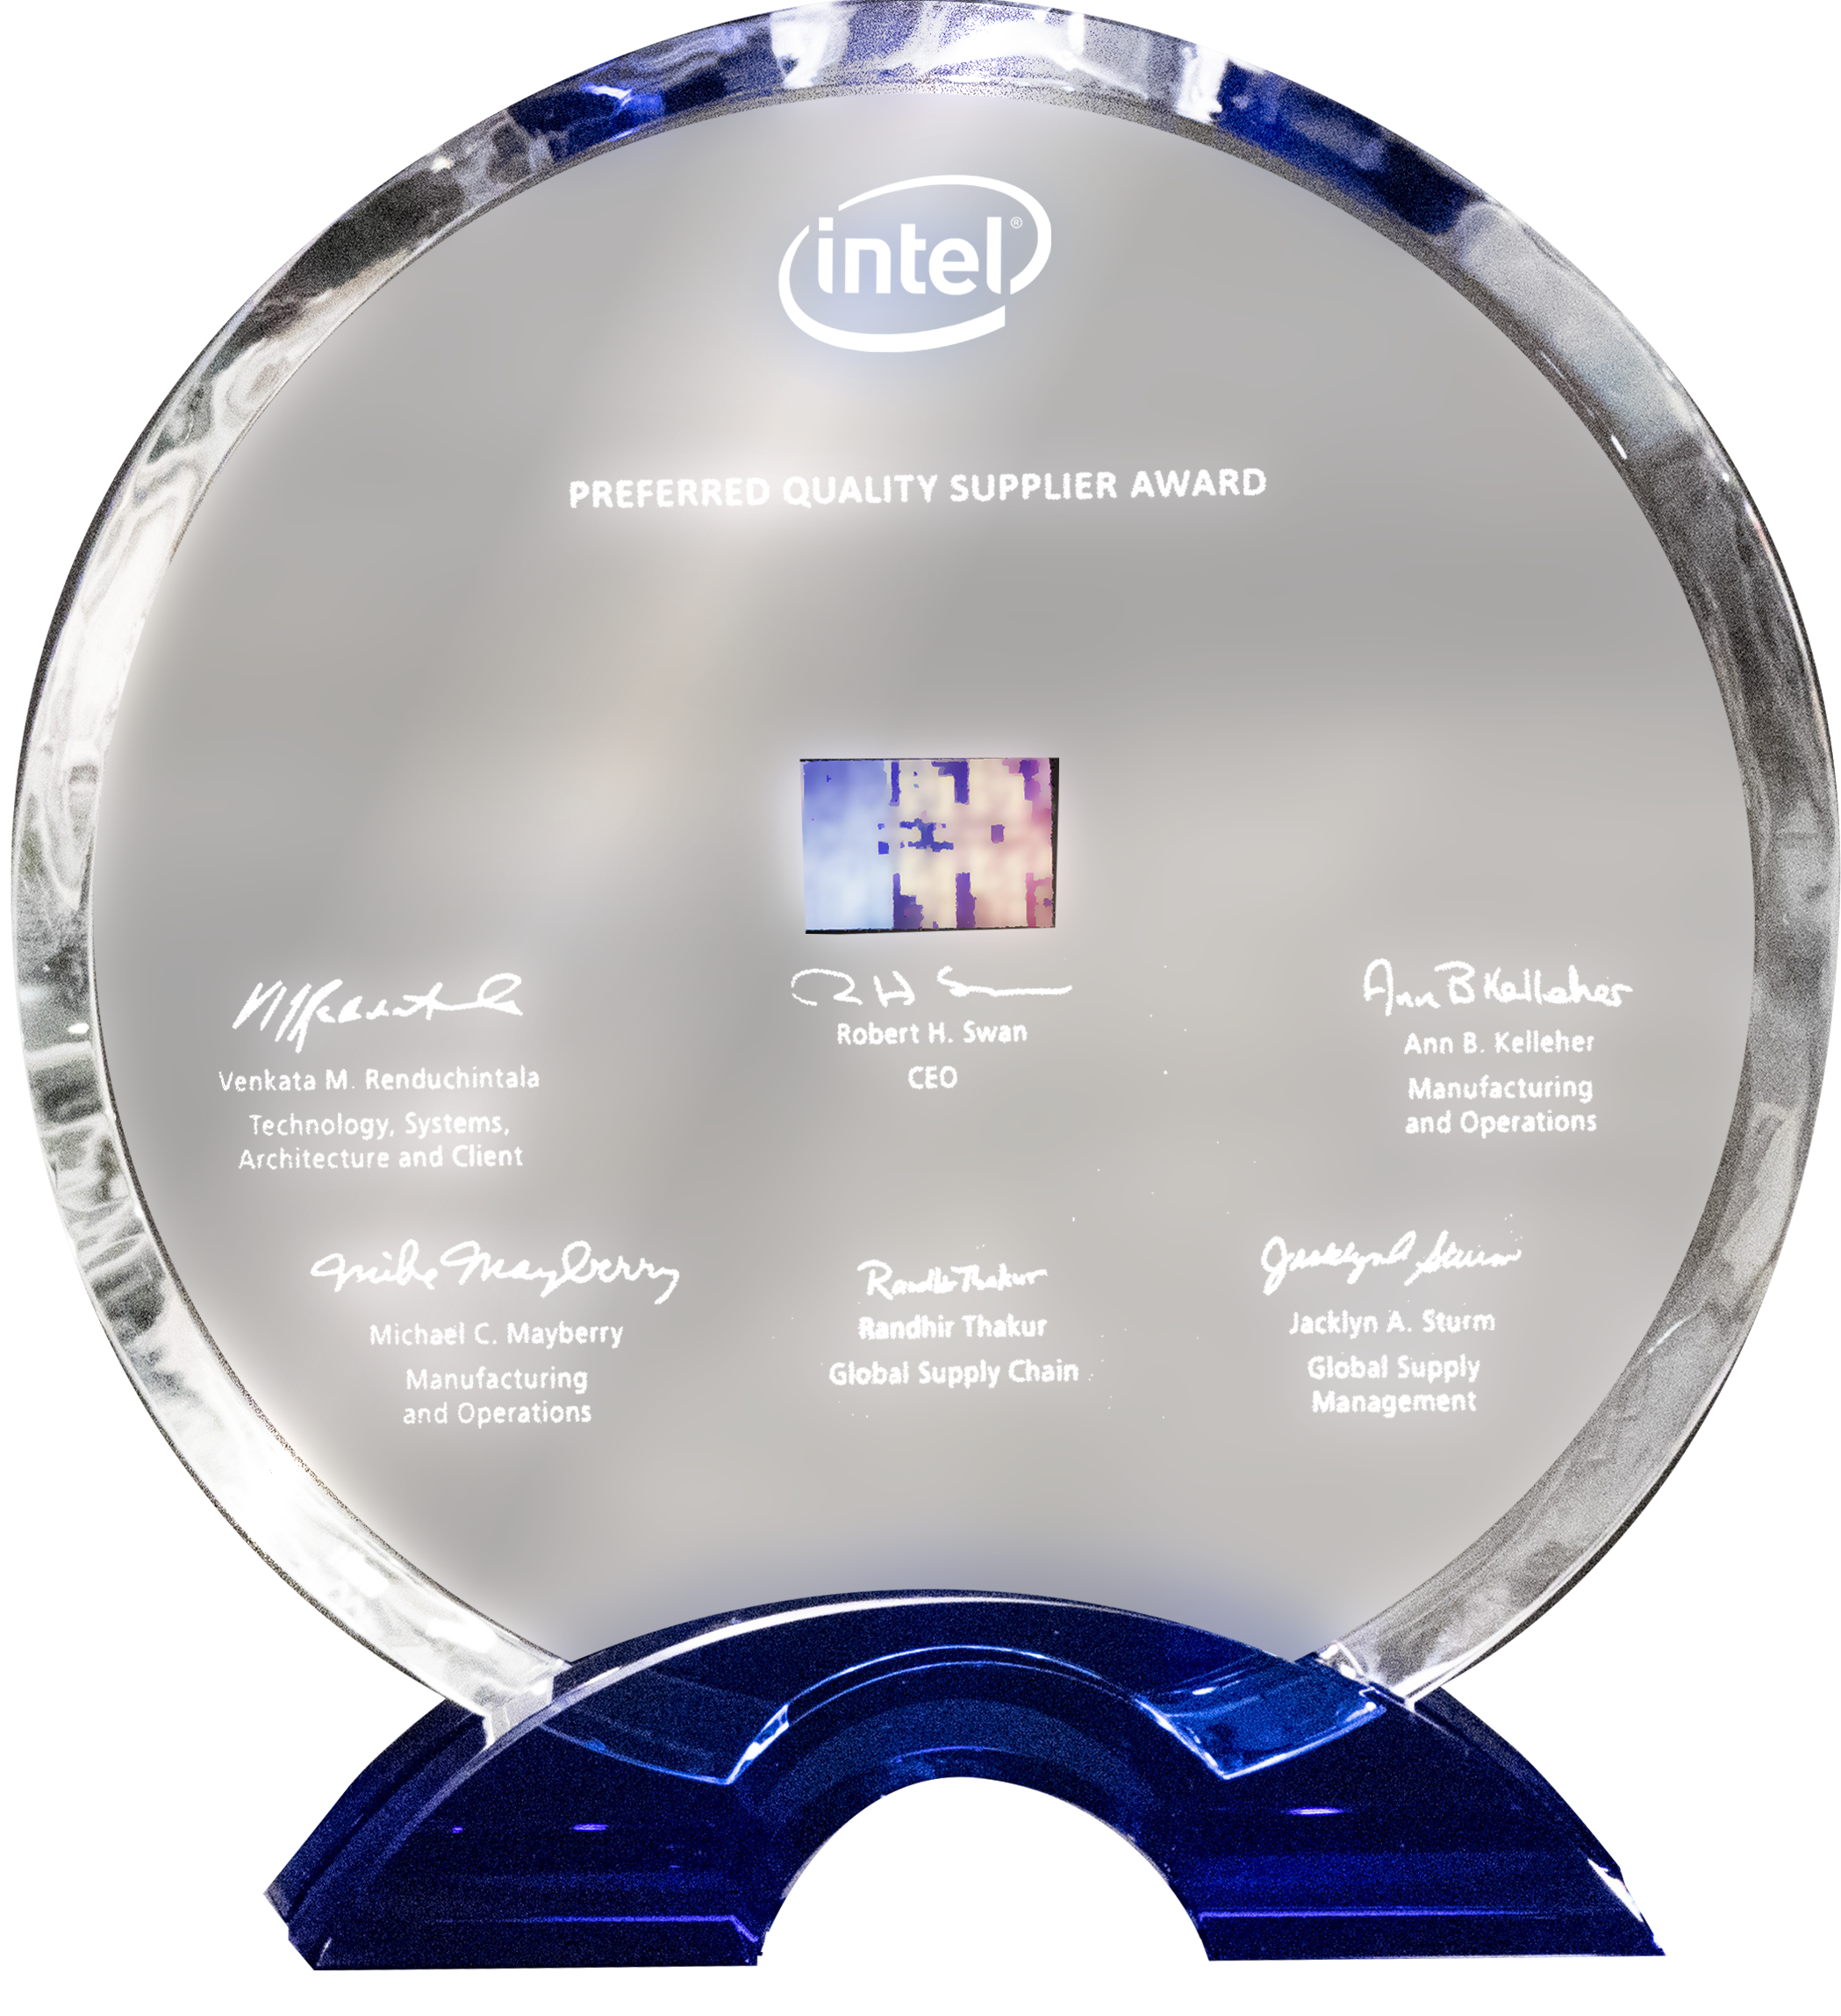 Intel 2018 Preferred Quality Supplier Award